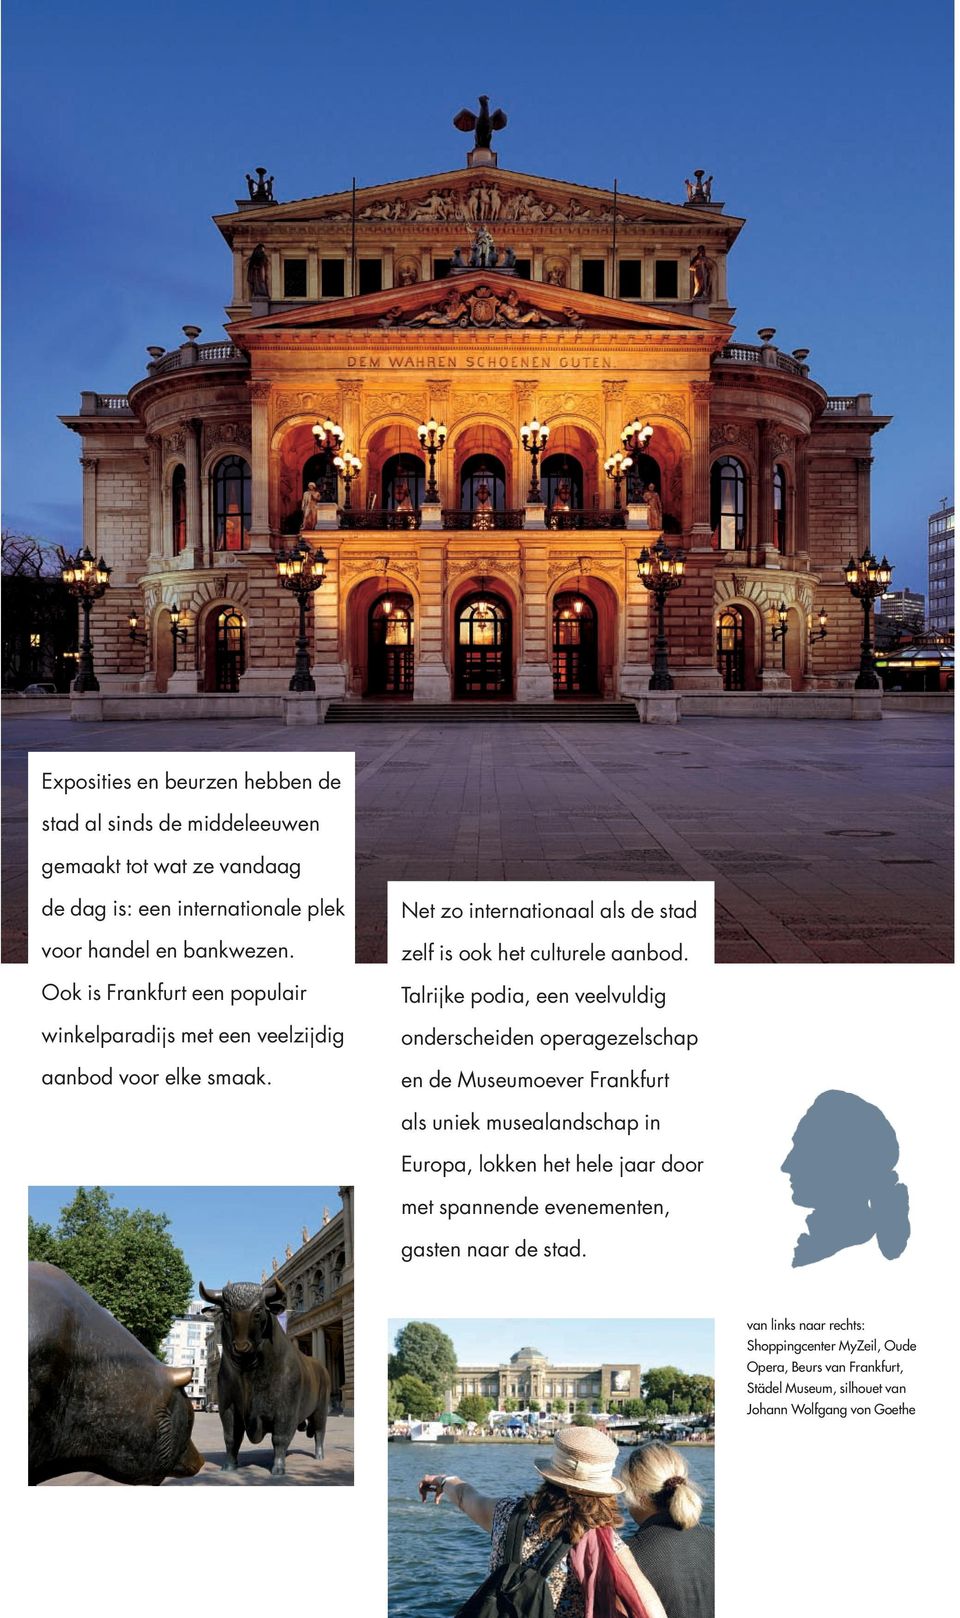 Talrijke podia, een veelvuldig onderscheiden operagezelschap en de Museumoever Frankfurt als uniek musealandschap in Europa, lokken het hele jaar door met